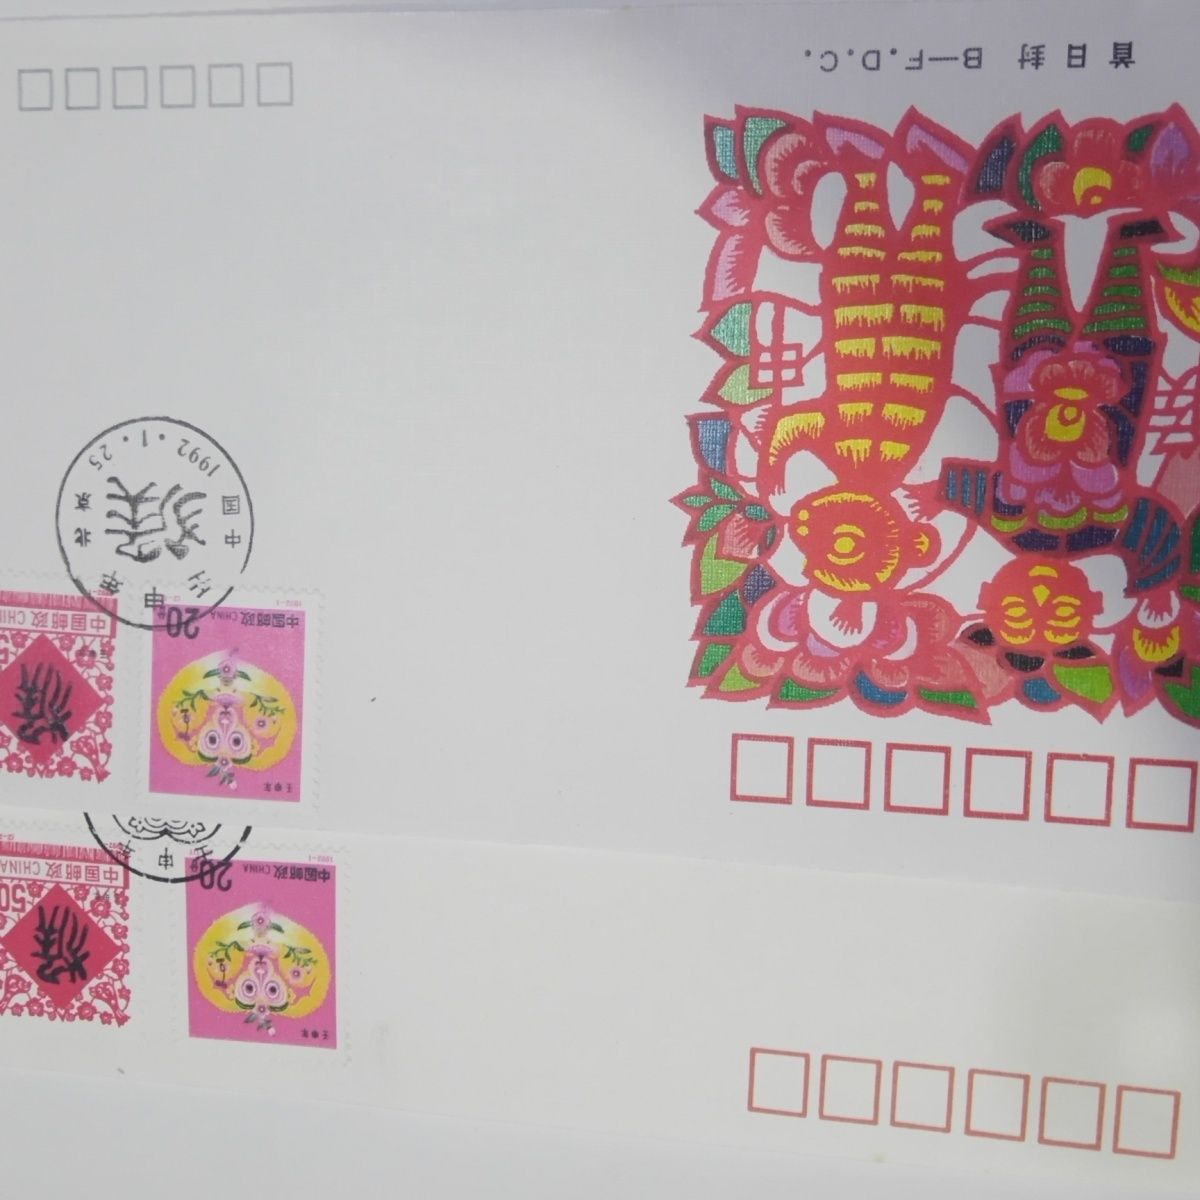 二轮生肖猴票邮票1992年,首日封雕刻版和水印封,随机发货2个封